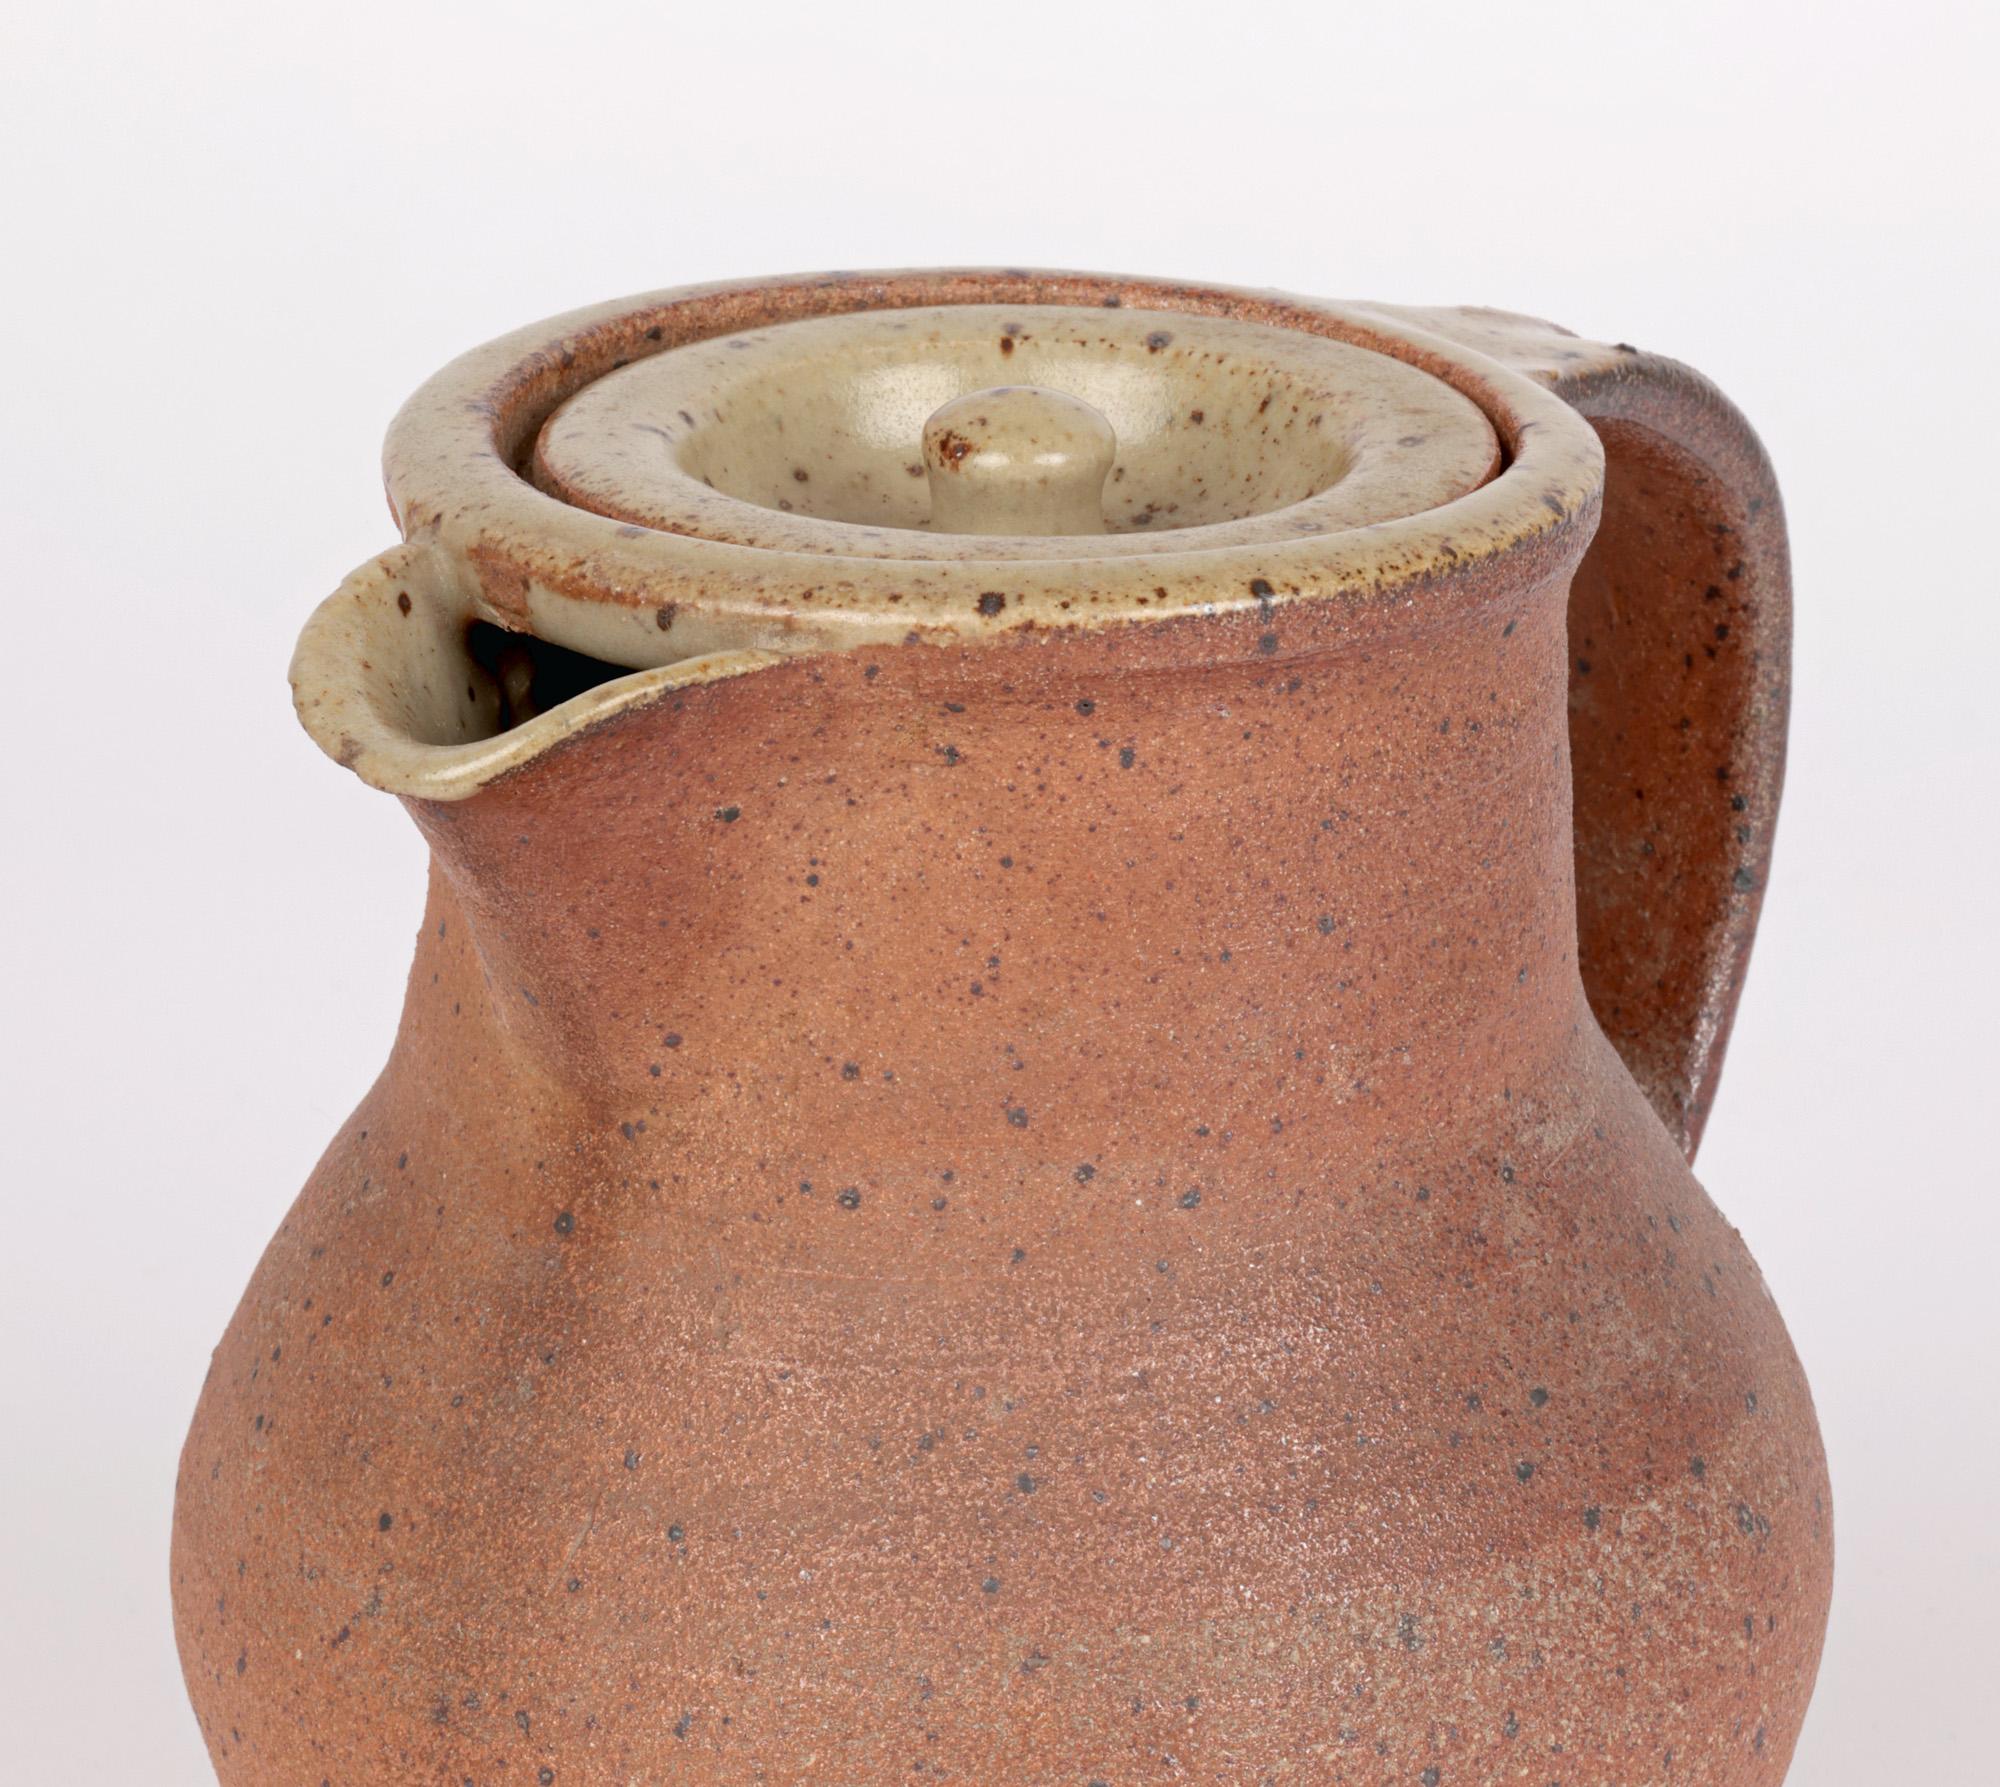 Une élégante cafetière Studio Pottery du milieu du siècle, émaillée à la main, du célèbre potier anglais Bernard Leach CBE (britannique, 1887-1979) et fabriquée à la Leach Pottery de St Ives, en Cornouailles. Le vase en grès repose sur une base